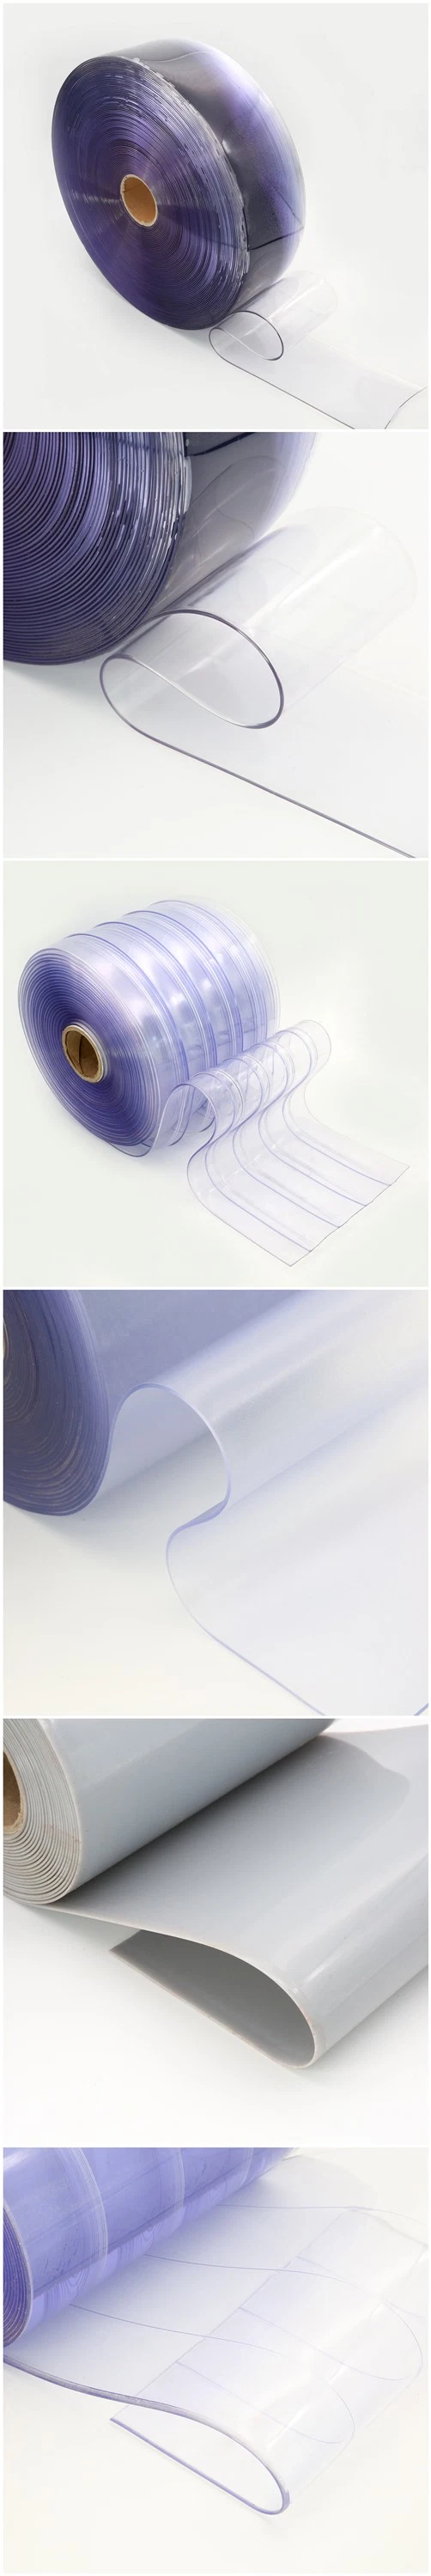 Transparent PVC Industrial Curtain/Plastic Curtain